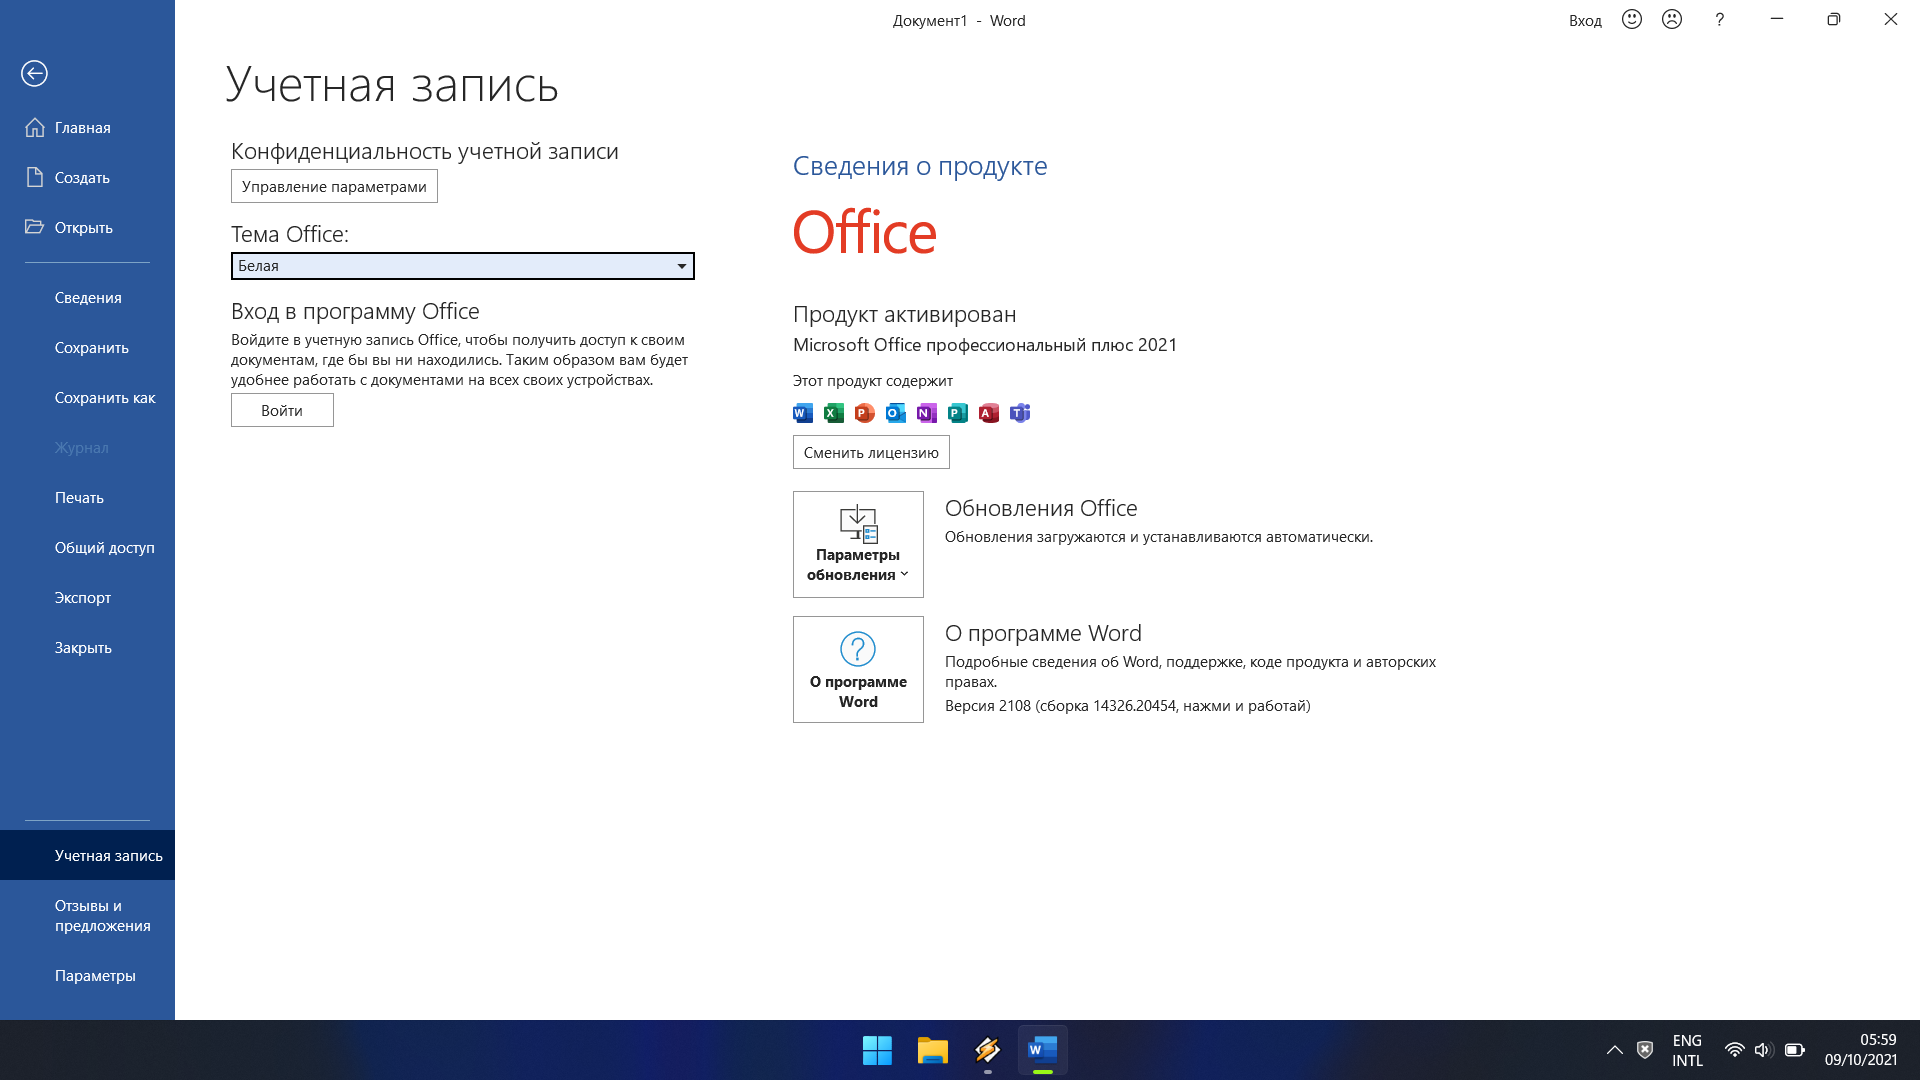 Офис 16 год. MS Office 2021 professional Plus ключ. MS Office 2021 Pro Plus. Office 2021 professional Plus. Microsoft Office 2021 professional.